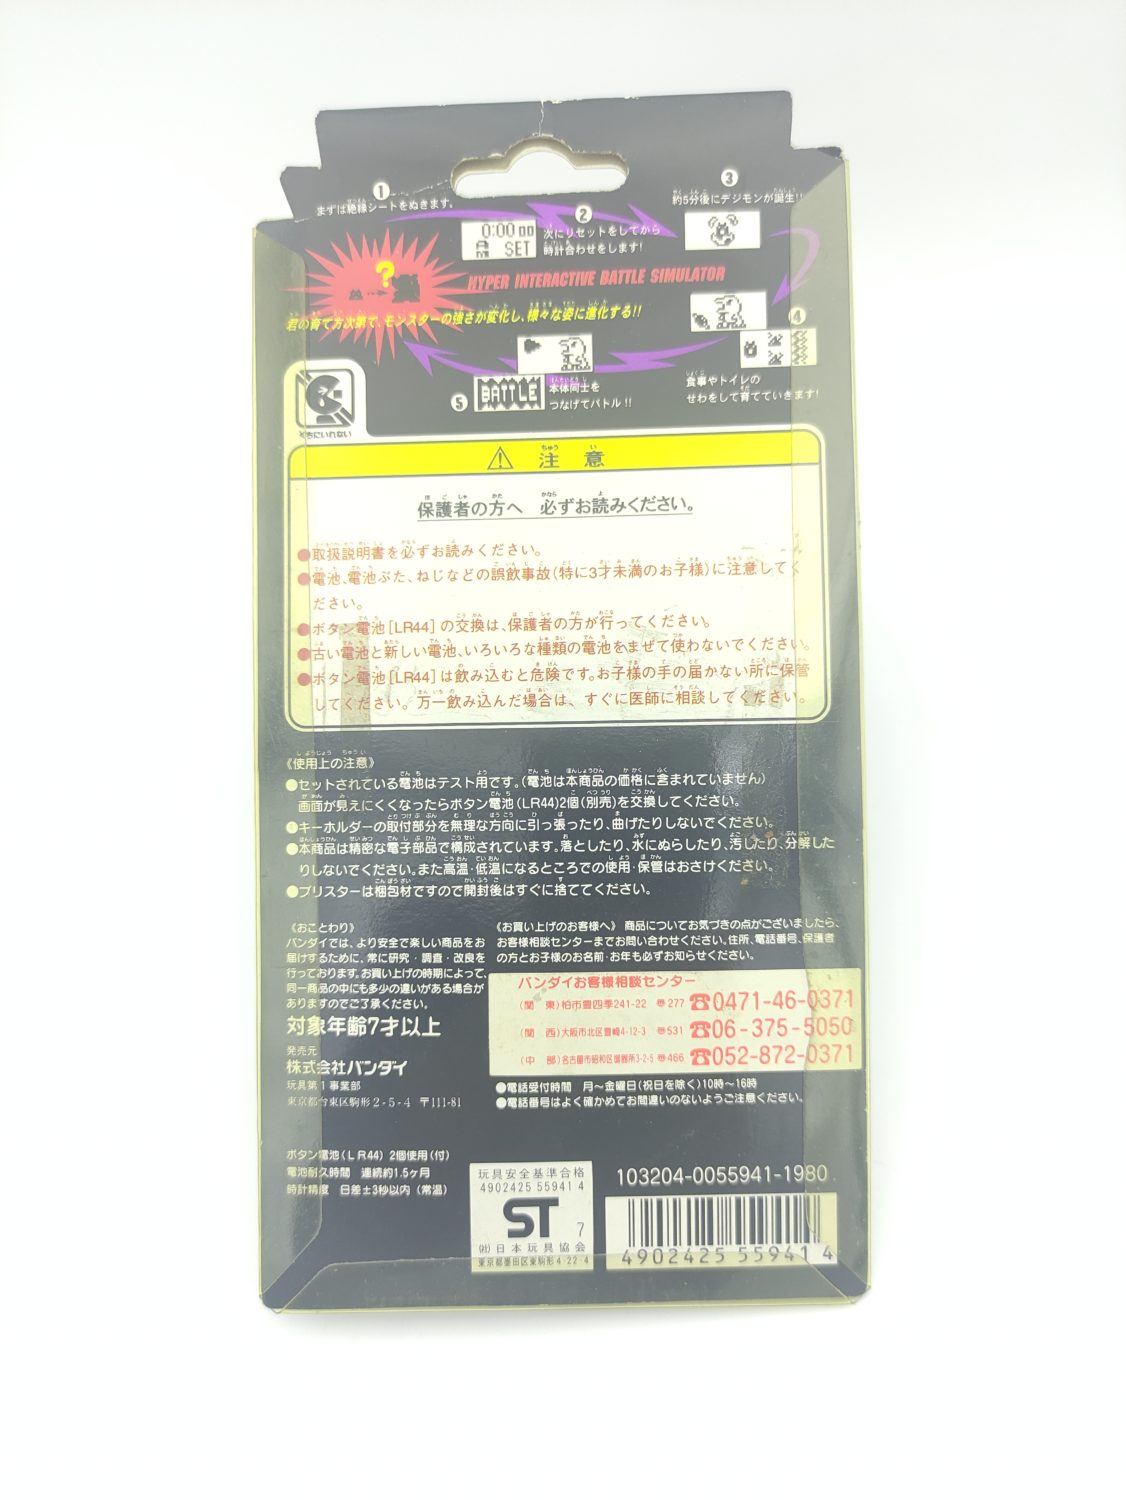 Digimon Digivice Digital Monster Ver 1 Grey Bandai boxed